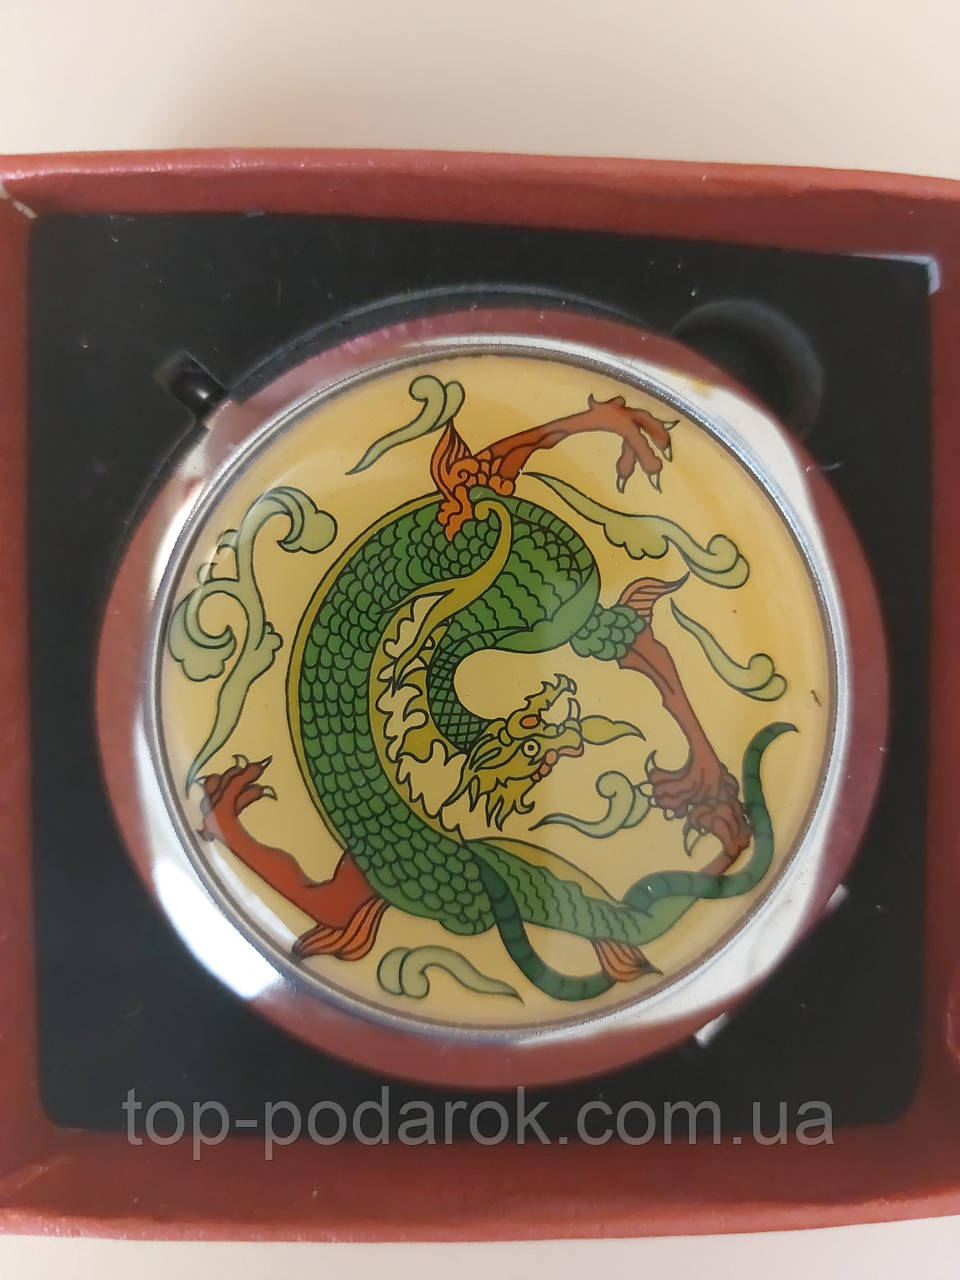 Зеркало в подарочной коробке с драконом